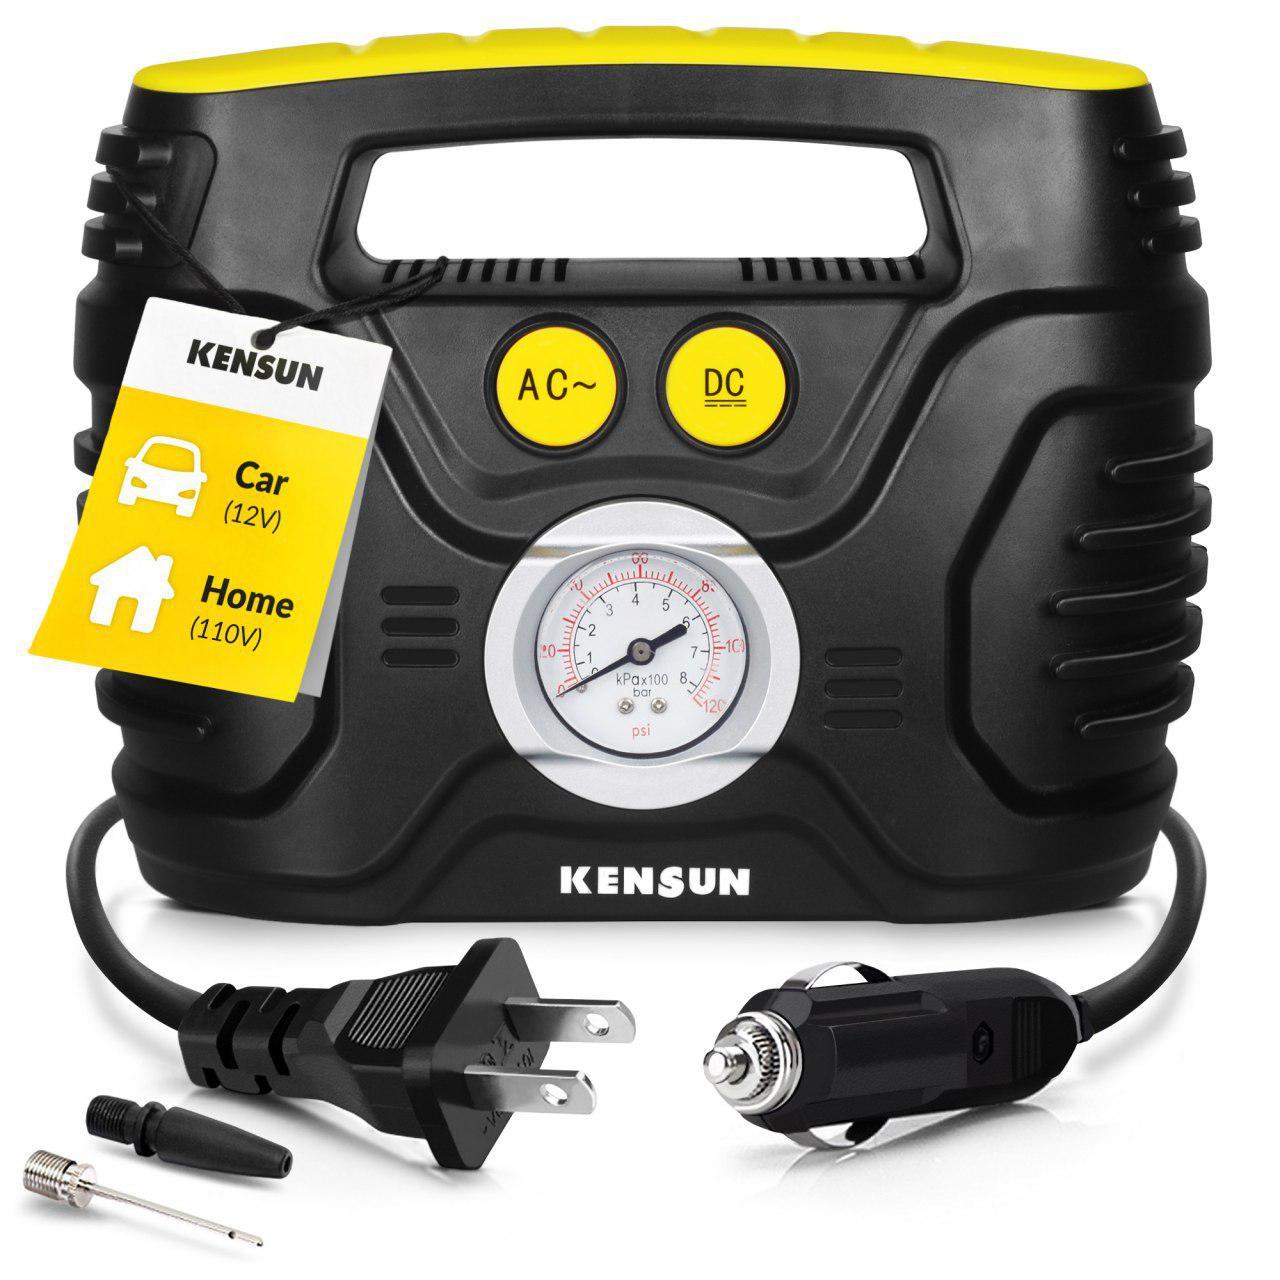 Kensun Portable Air Compressor Pump AC/DC for Car 12V and Home 110V Tire Inflator